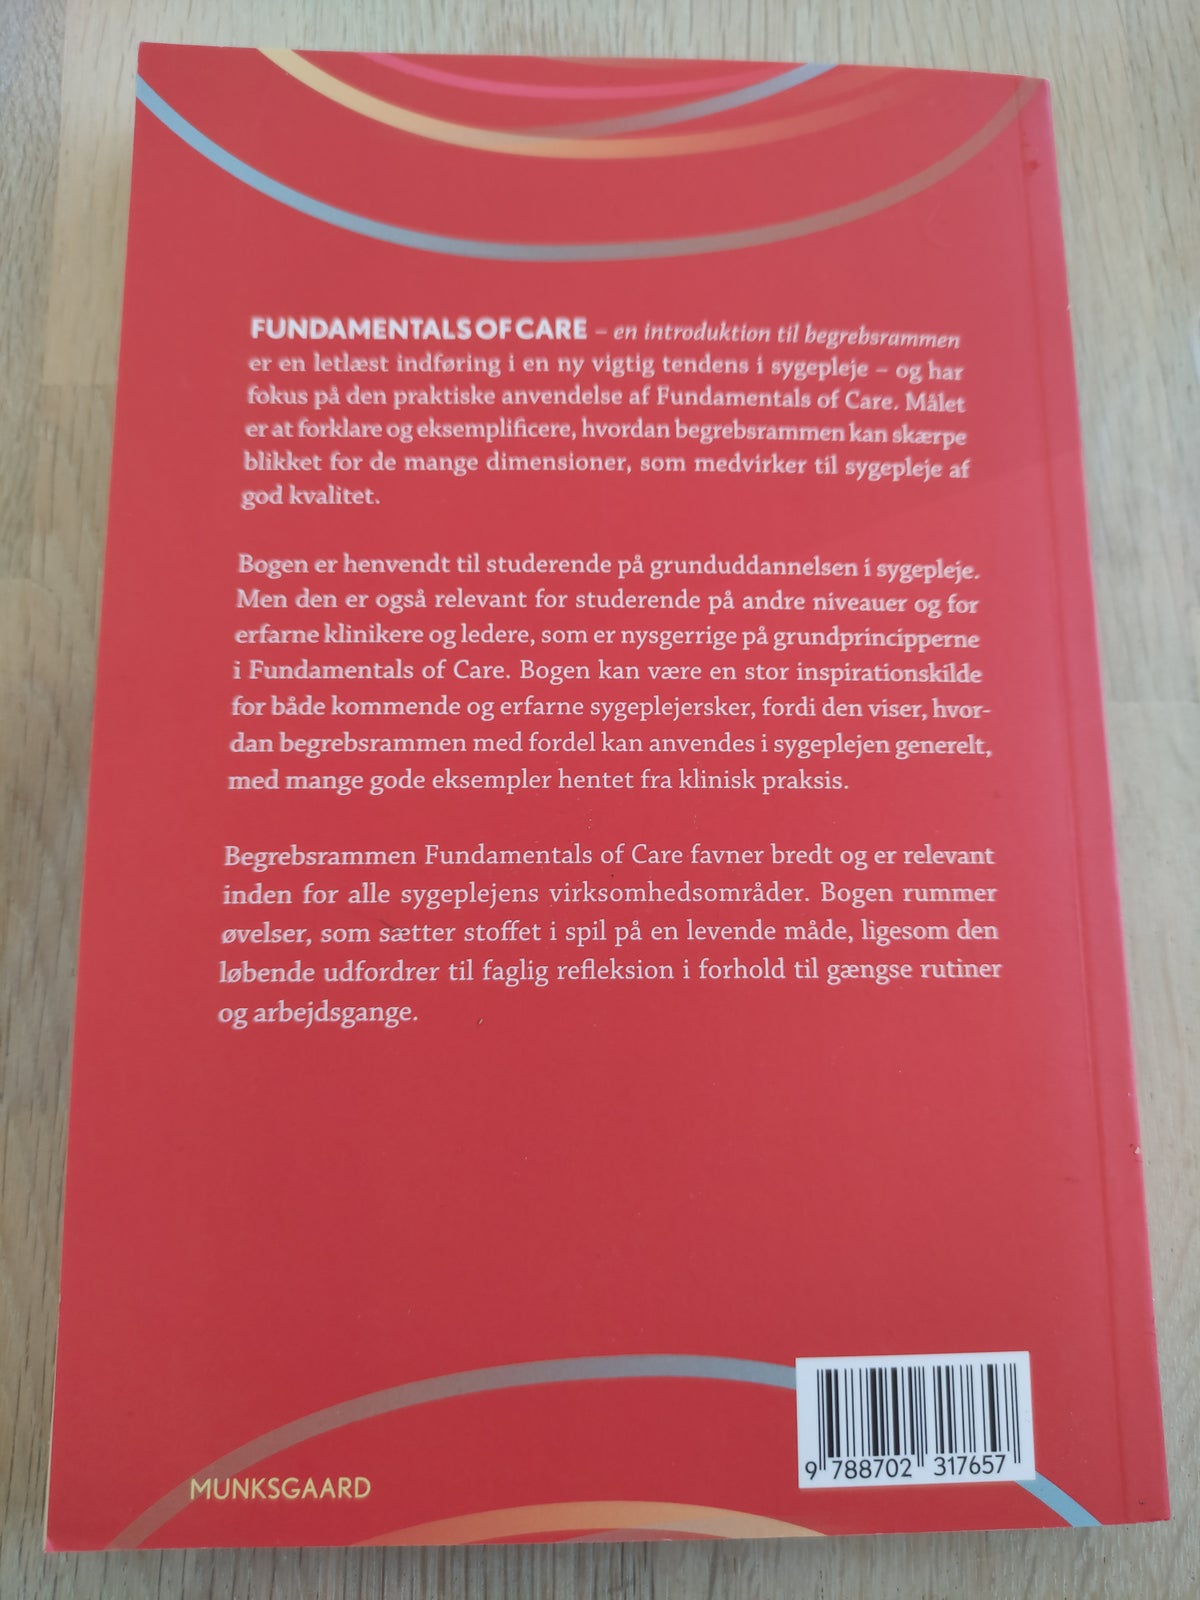 Fundamentals of Care - en introduktion til begrebs, Åsa